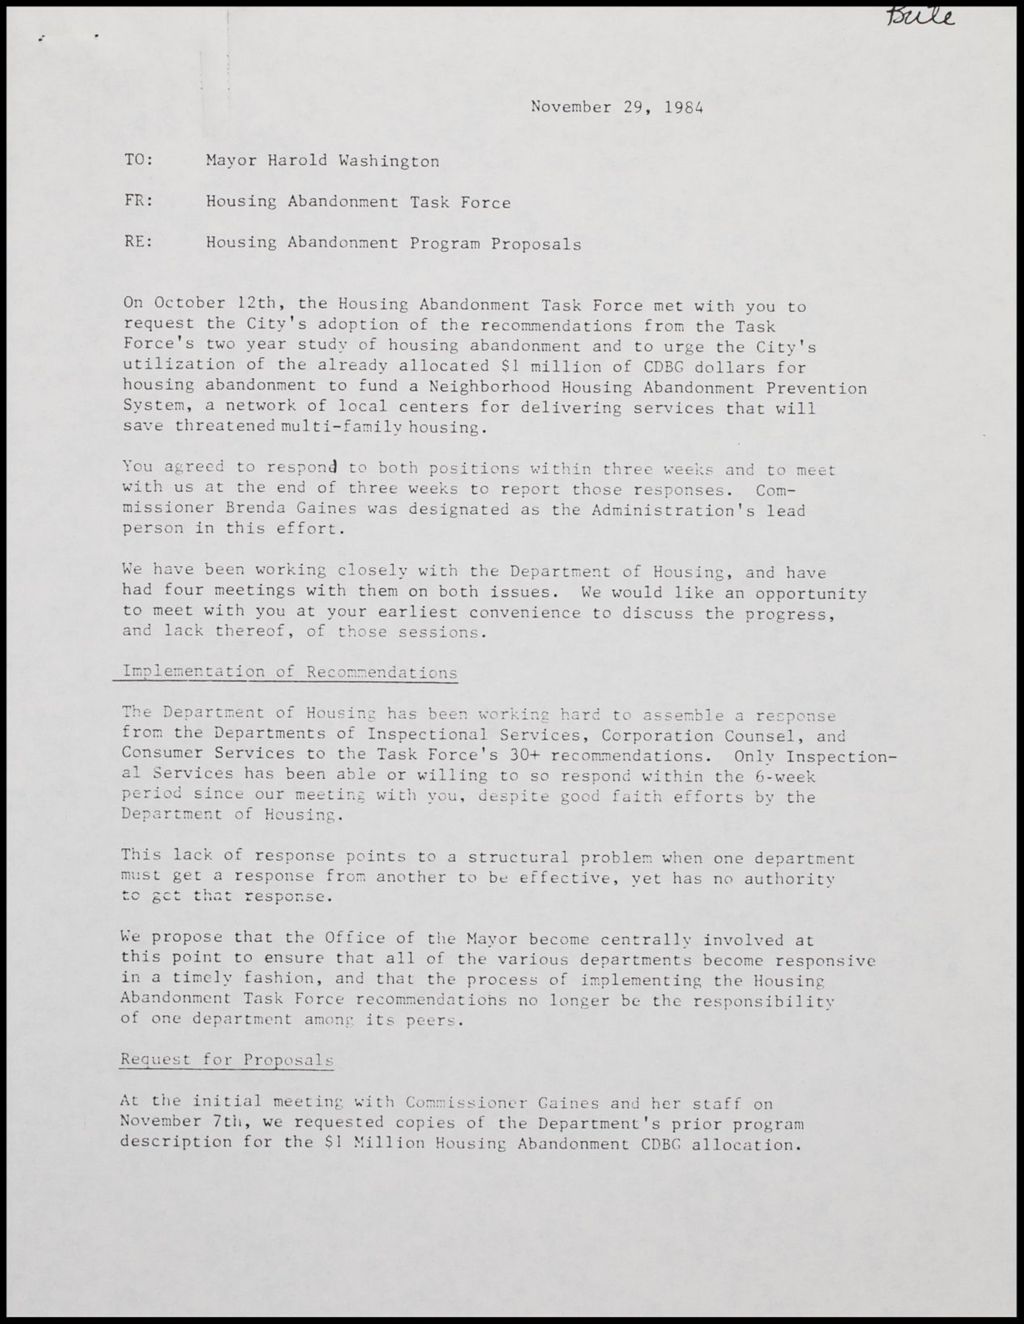 Housing Abandonment Task Force - Memos to Mayor Washington, 1984 (Folder II-1791)